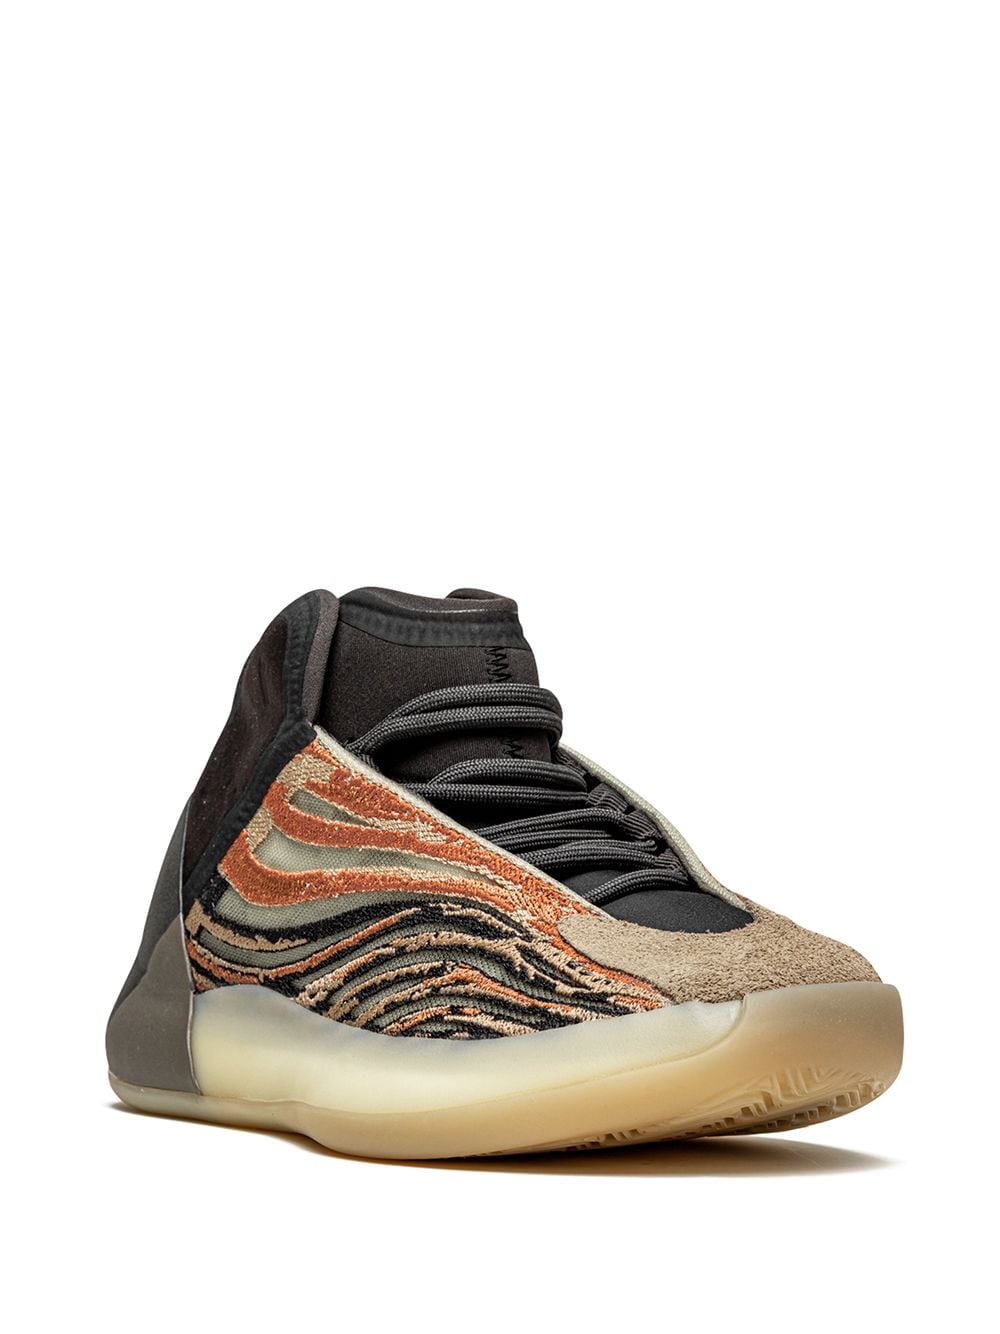 Image 2 of adidas Yeezy YEEZY QNTM "Flash Orange" sneakers